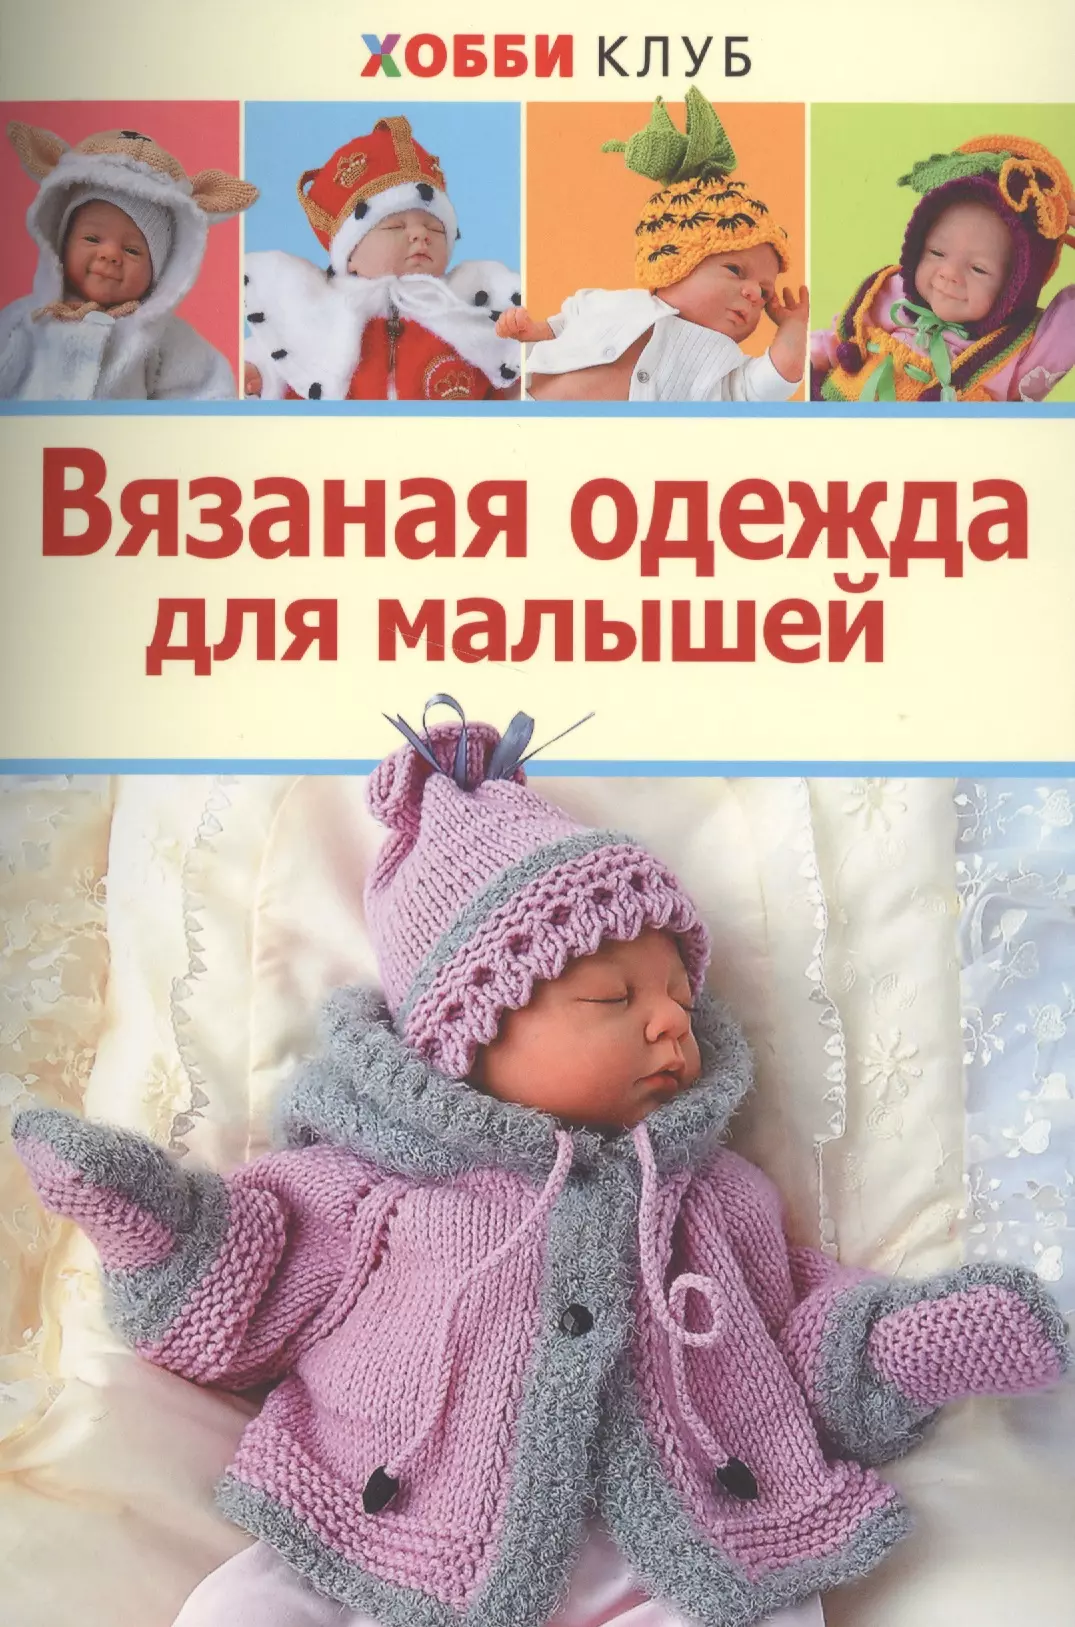 Демина Мария Александровна - Вязаная одежда для малышей. Хобби Клуб